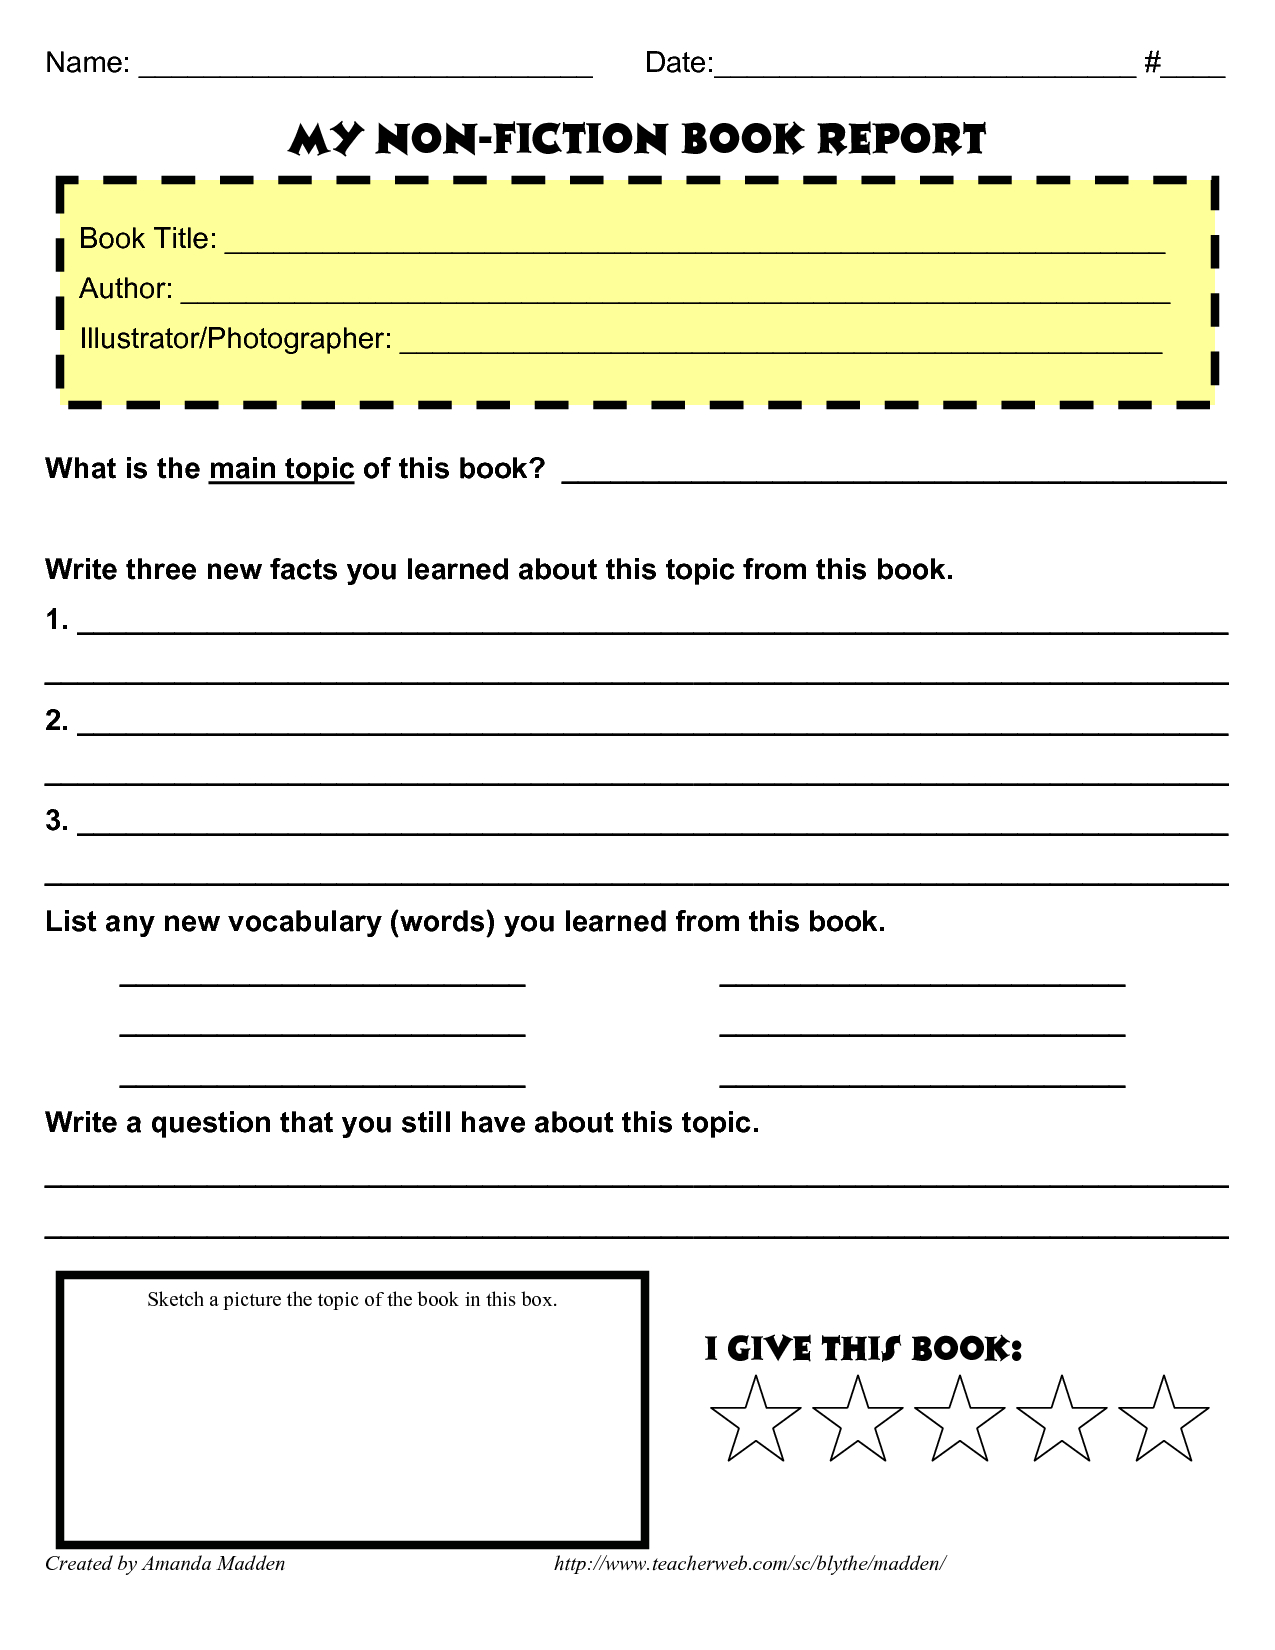 Grade 4 Book Report Template Non Fiction | Book Reports With Nonfiction Book Report Template